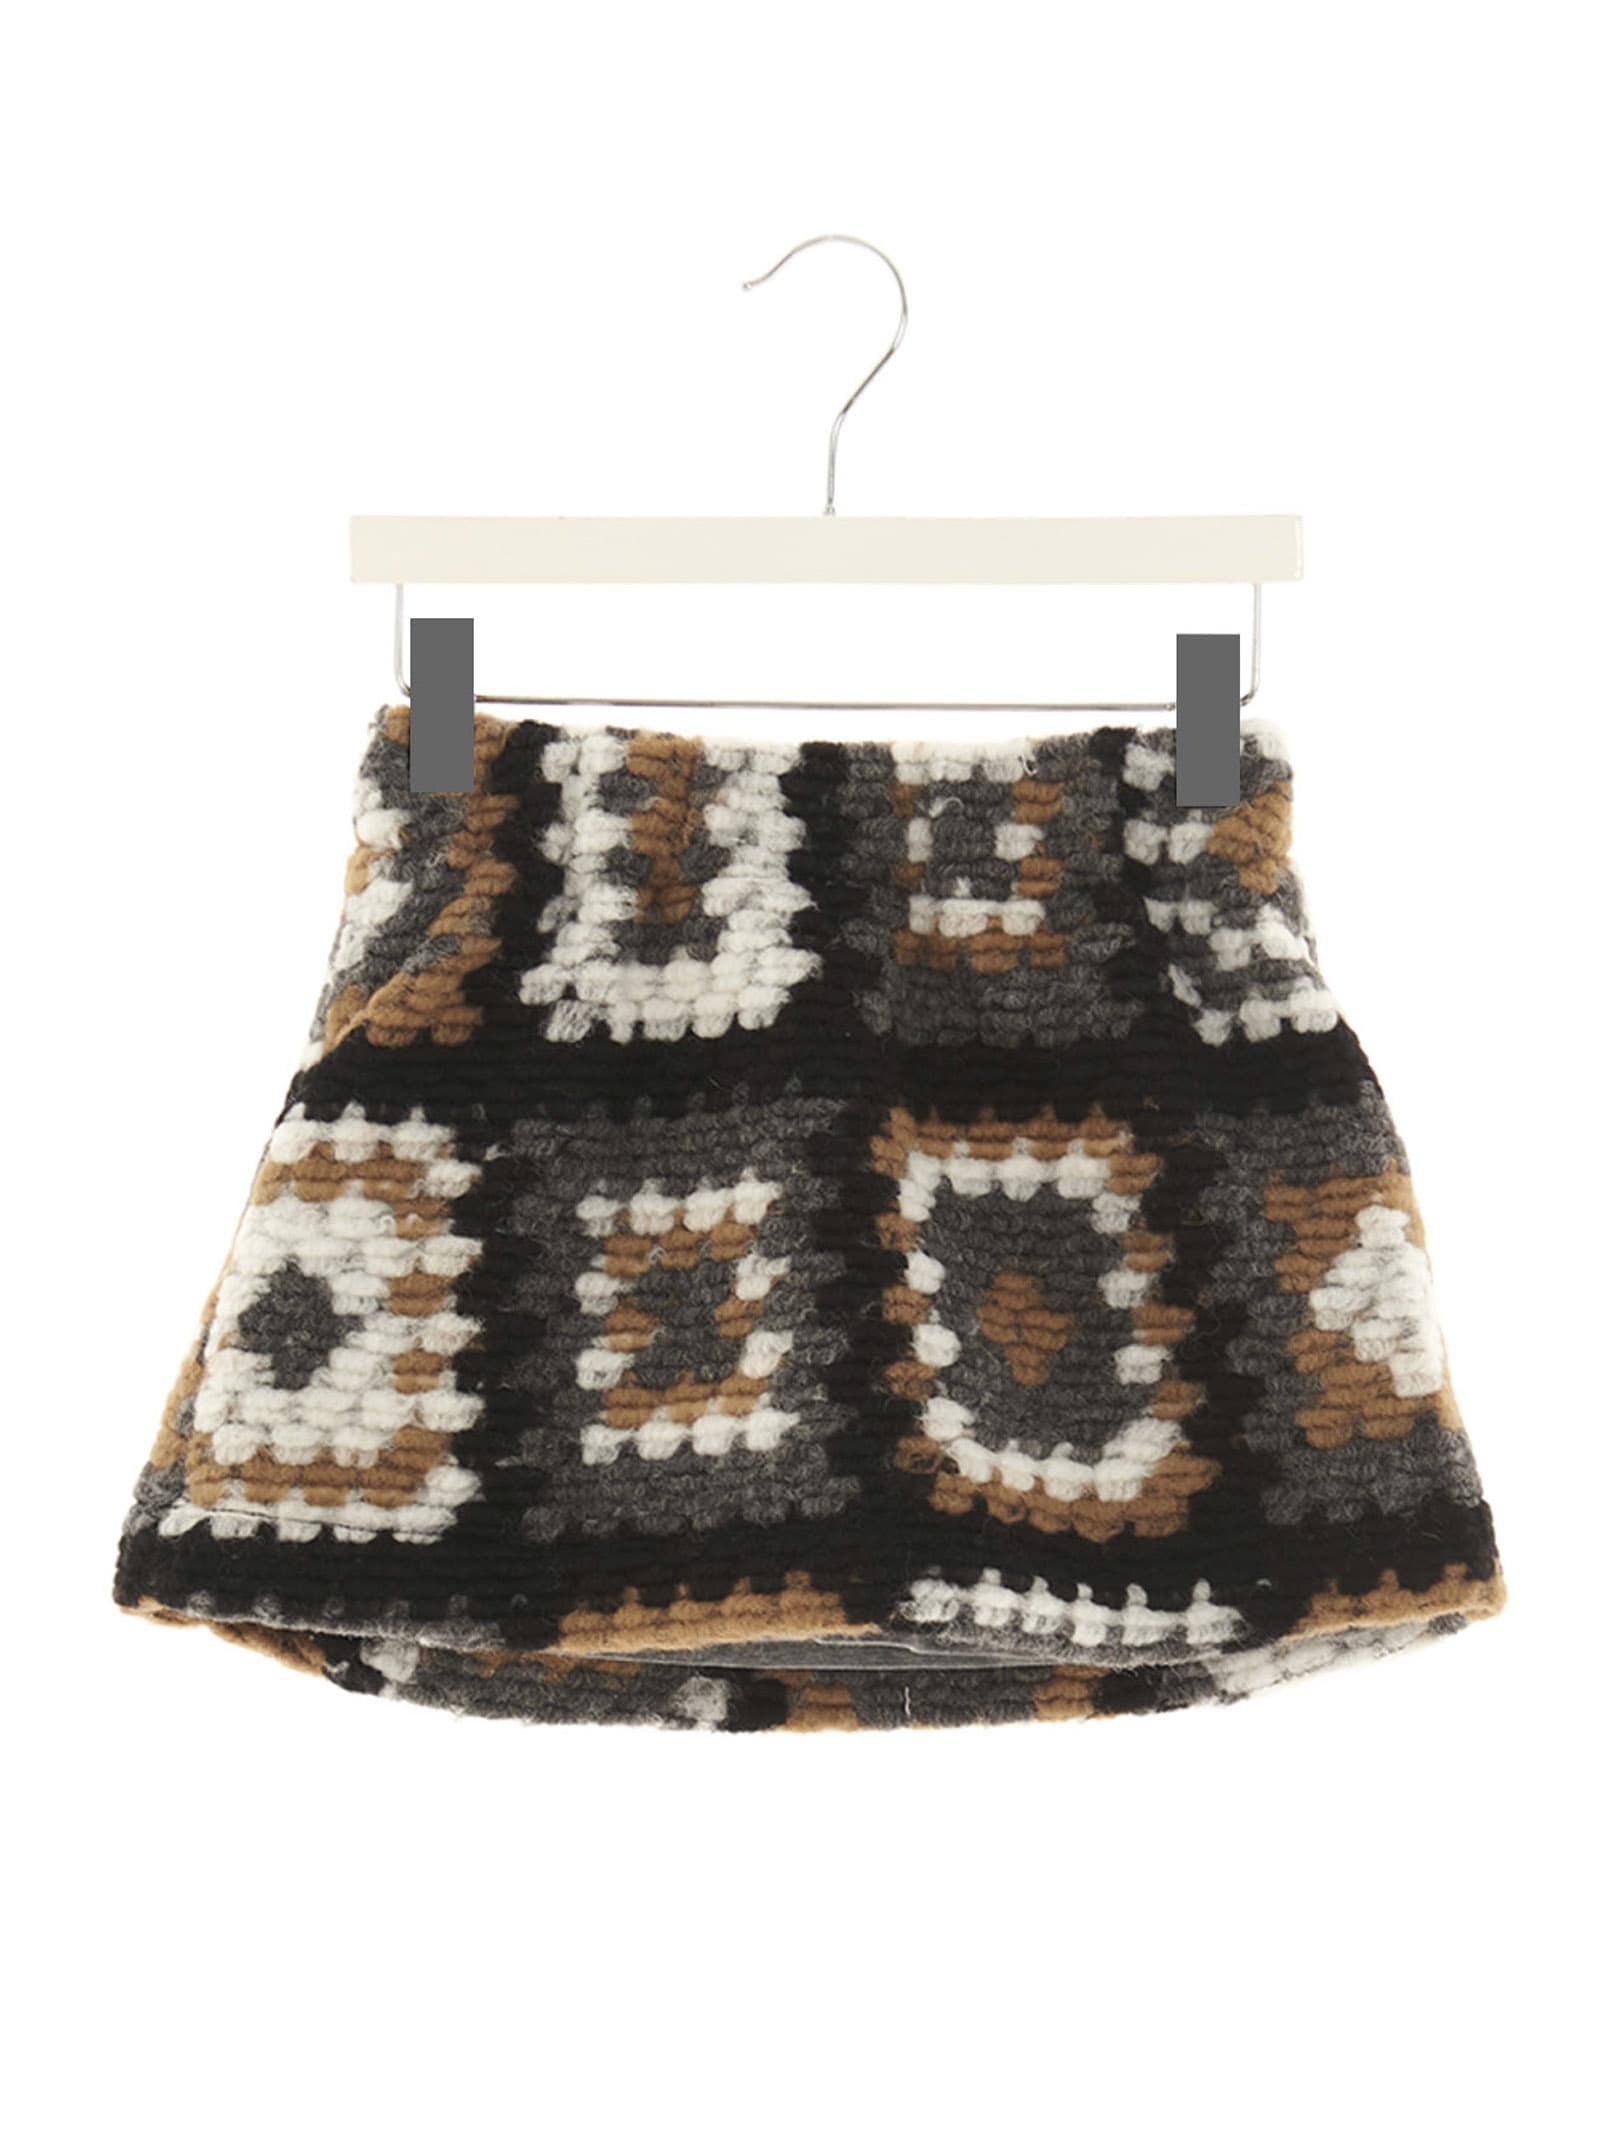 Douuod granny Square Crochet Skirt